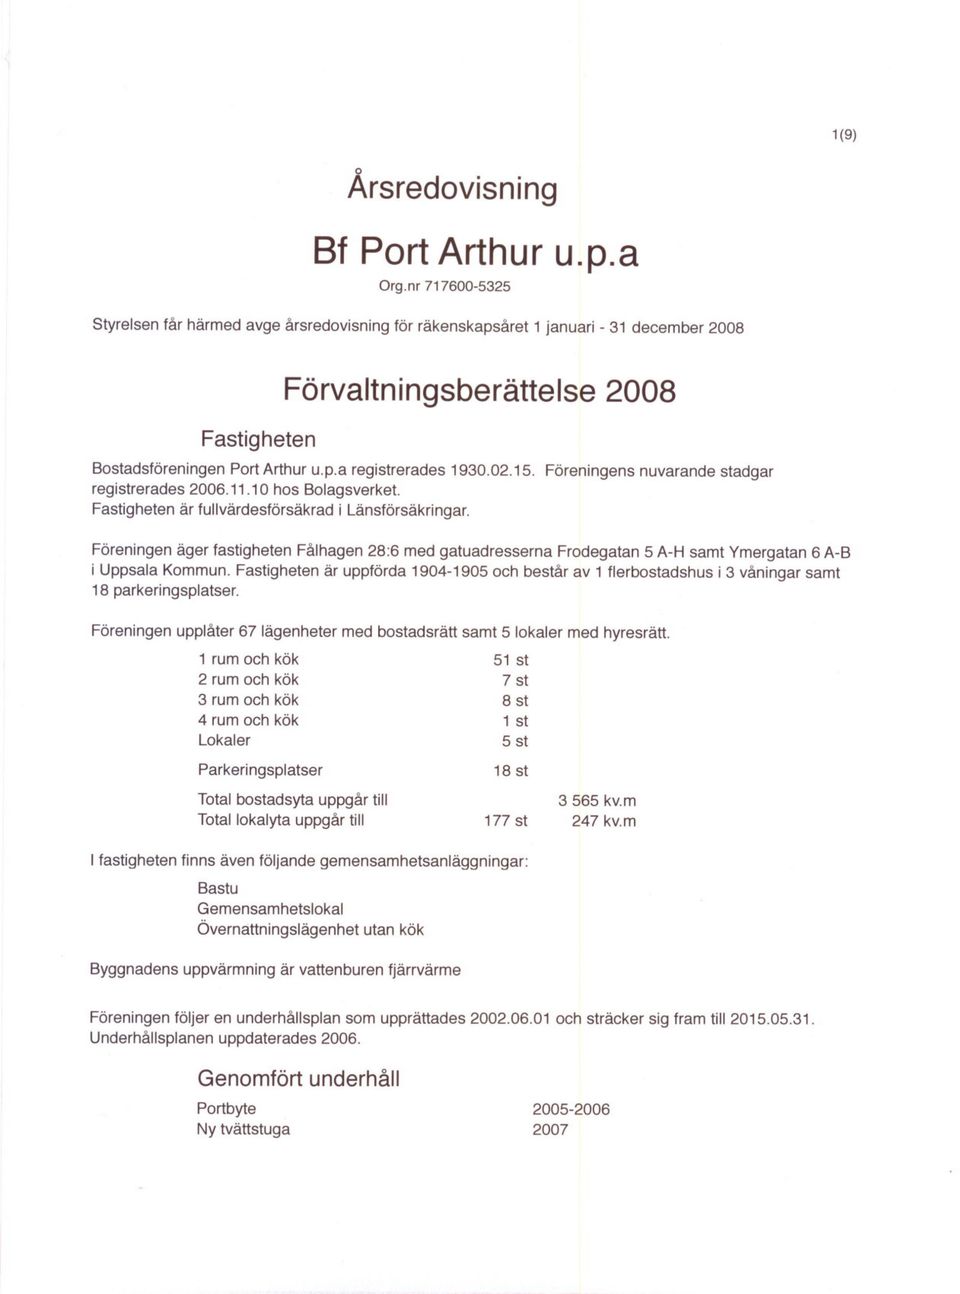 F6reningens nuvarande stadgar registrerades 2006.11.10 hs Blagsverket. Fastigheten ar fullvardesf6rsakrad i Lansf6rsakringar.